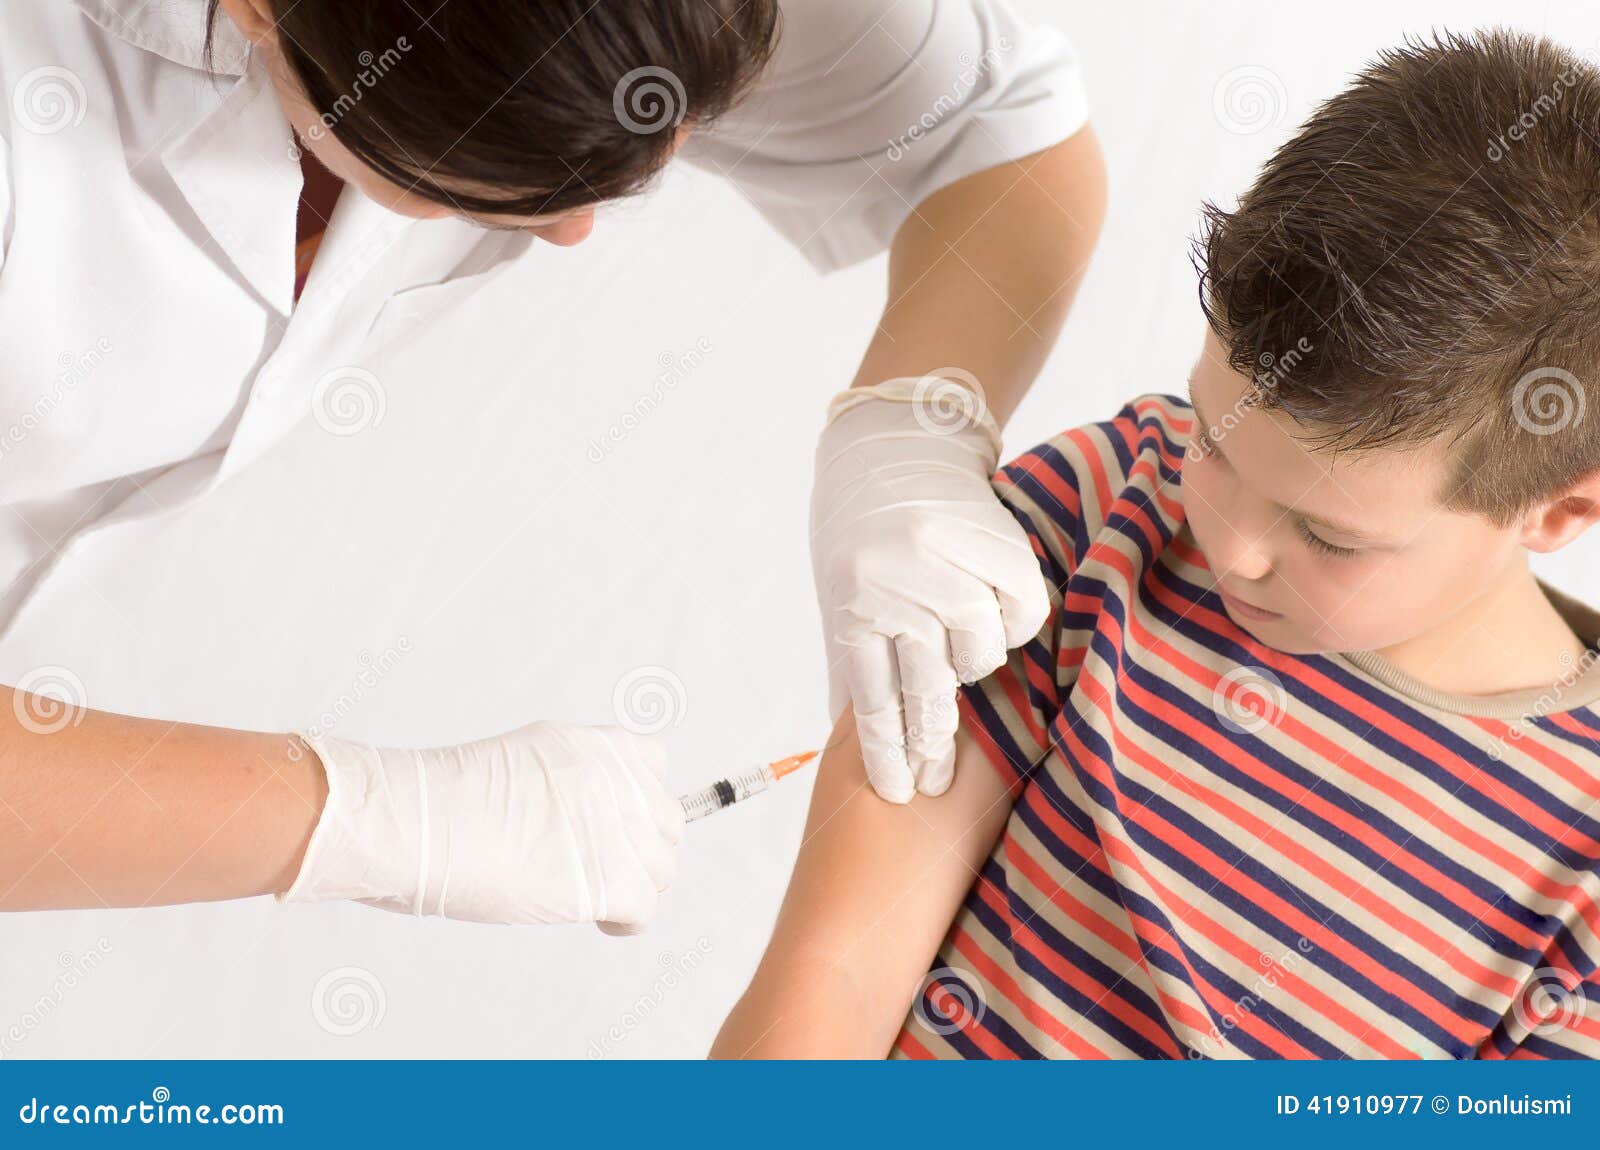 Вакциной заражают. Вакцинация от туляремии. Игра прививка в руку.